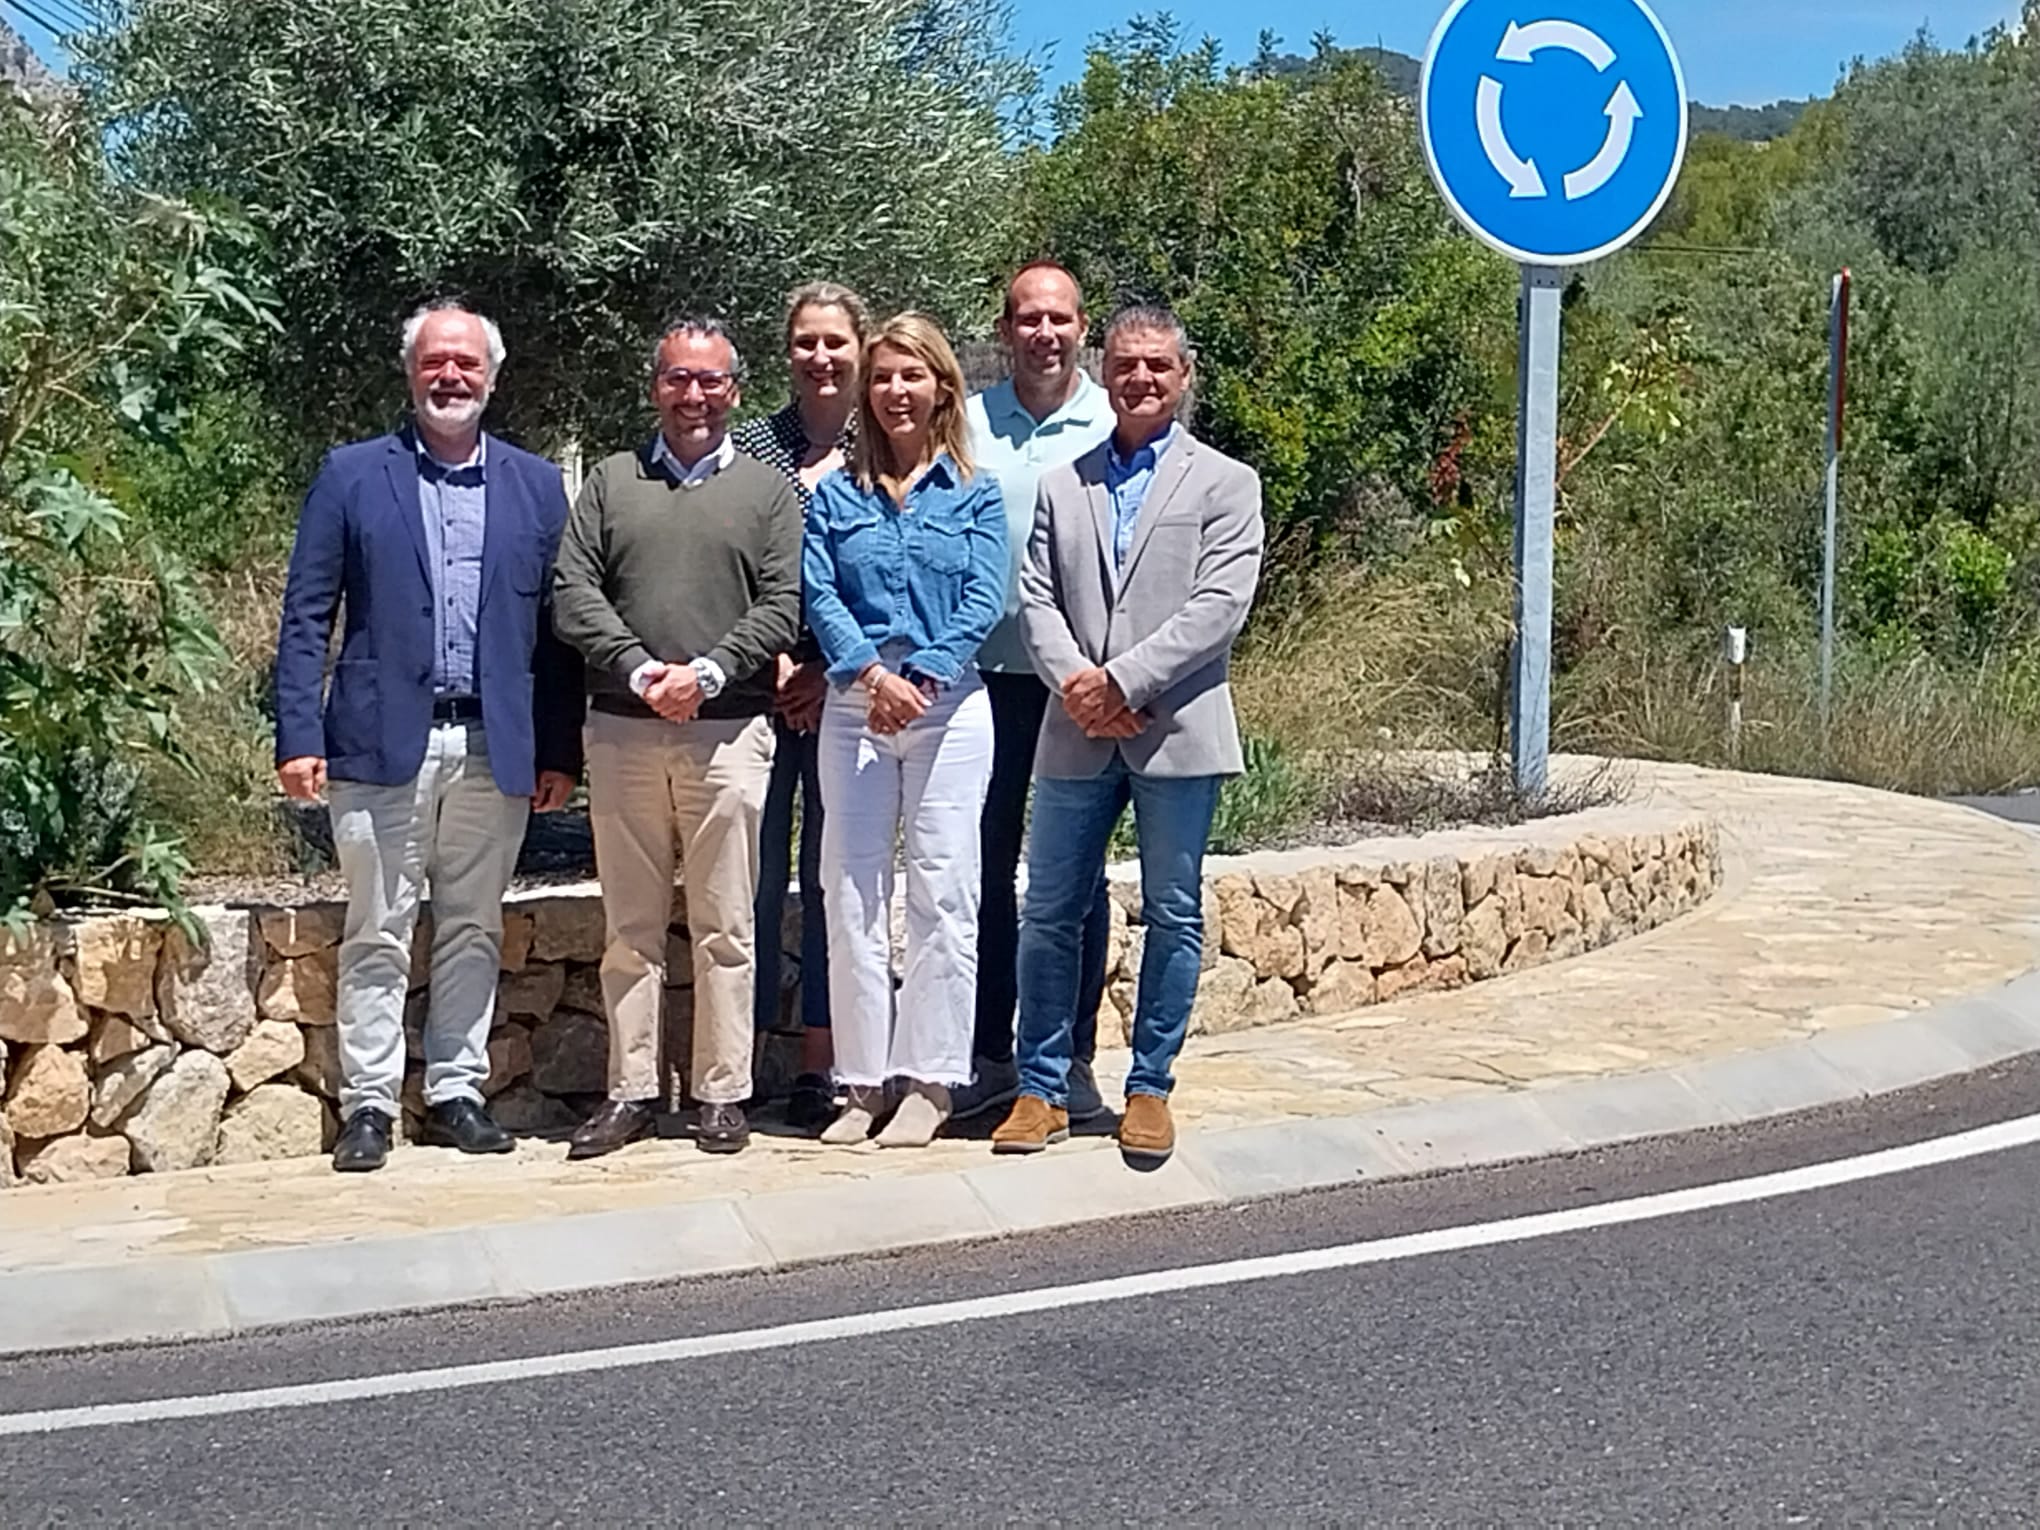 El nou vial cívic enllaçarà l'existent situat vora la rotonda de Camp de Mar amb direcció Peguera.